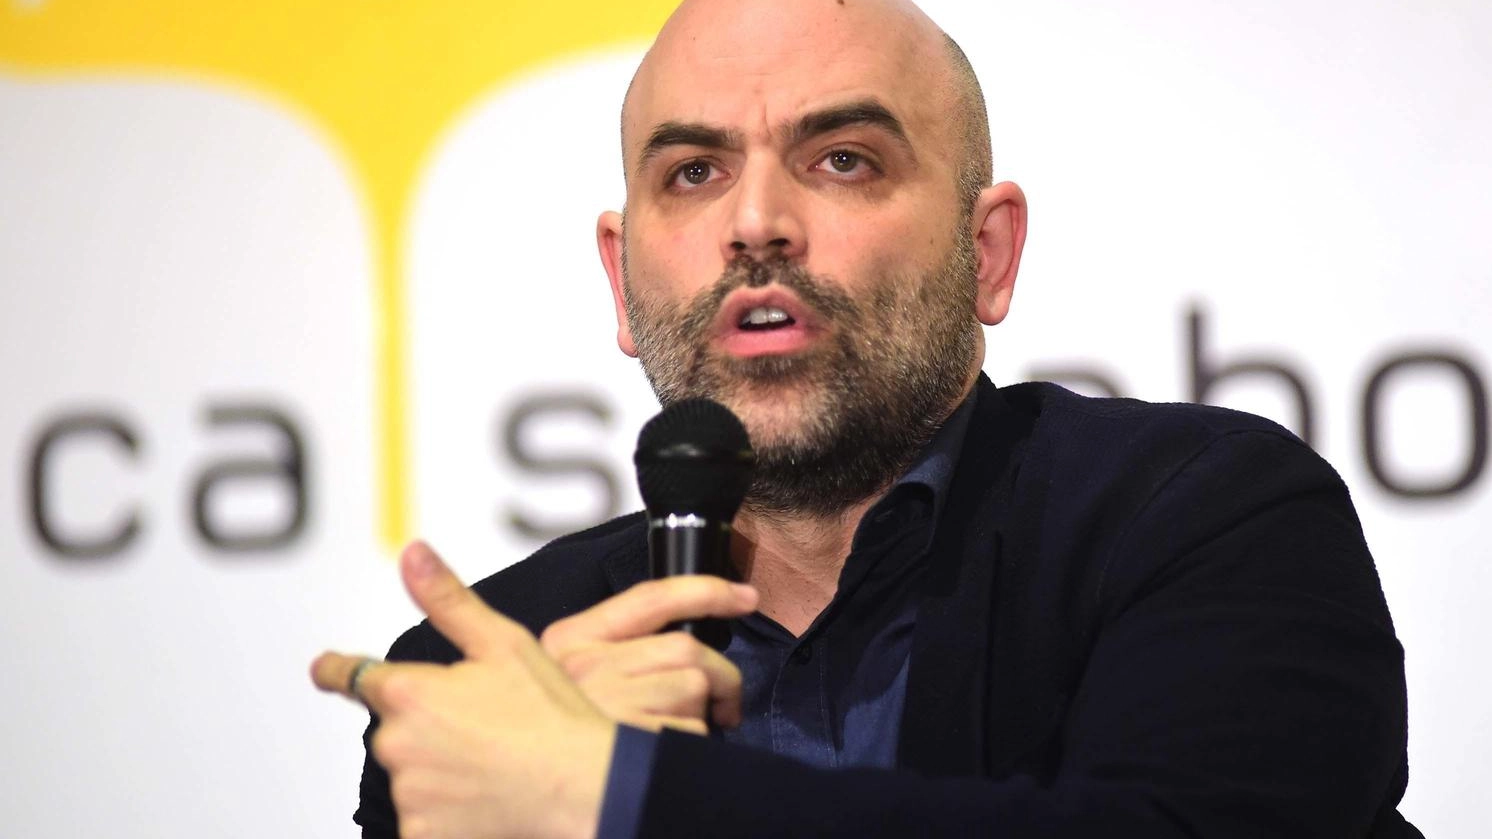 Il giornalista Roberto Saviano è stato contestato a Varese con uno striscione diffamatorio. L'episodio è al vaglio della Digos per ipotesi di estremismo di destra. Saviano ha risposto con fermezza.